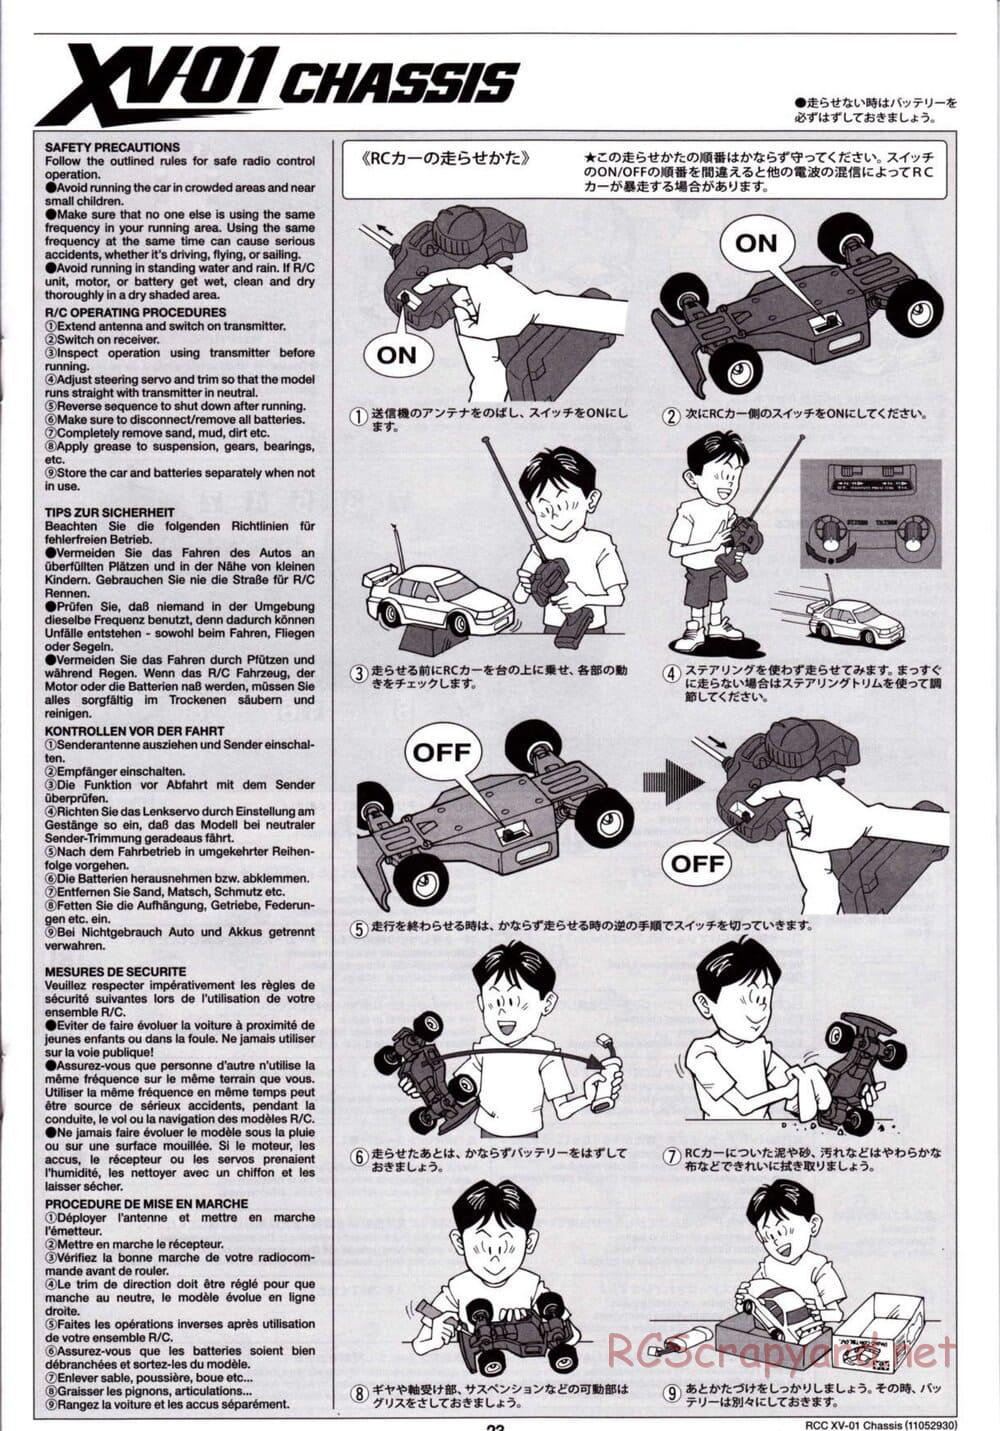 Tamiya - XV-01 Chassis - Manual - Page 24